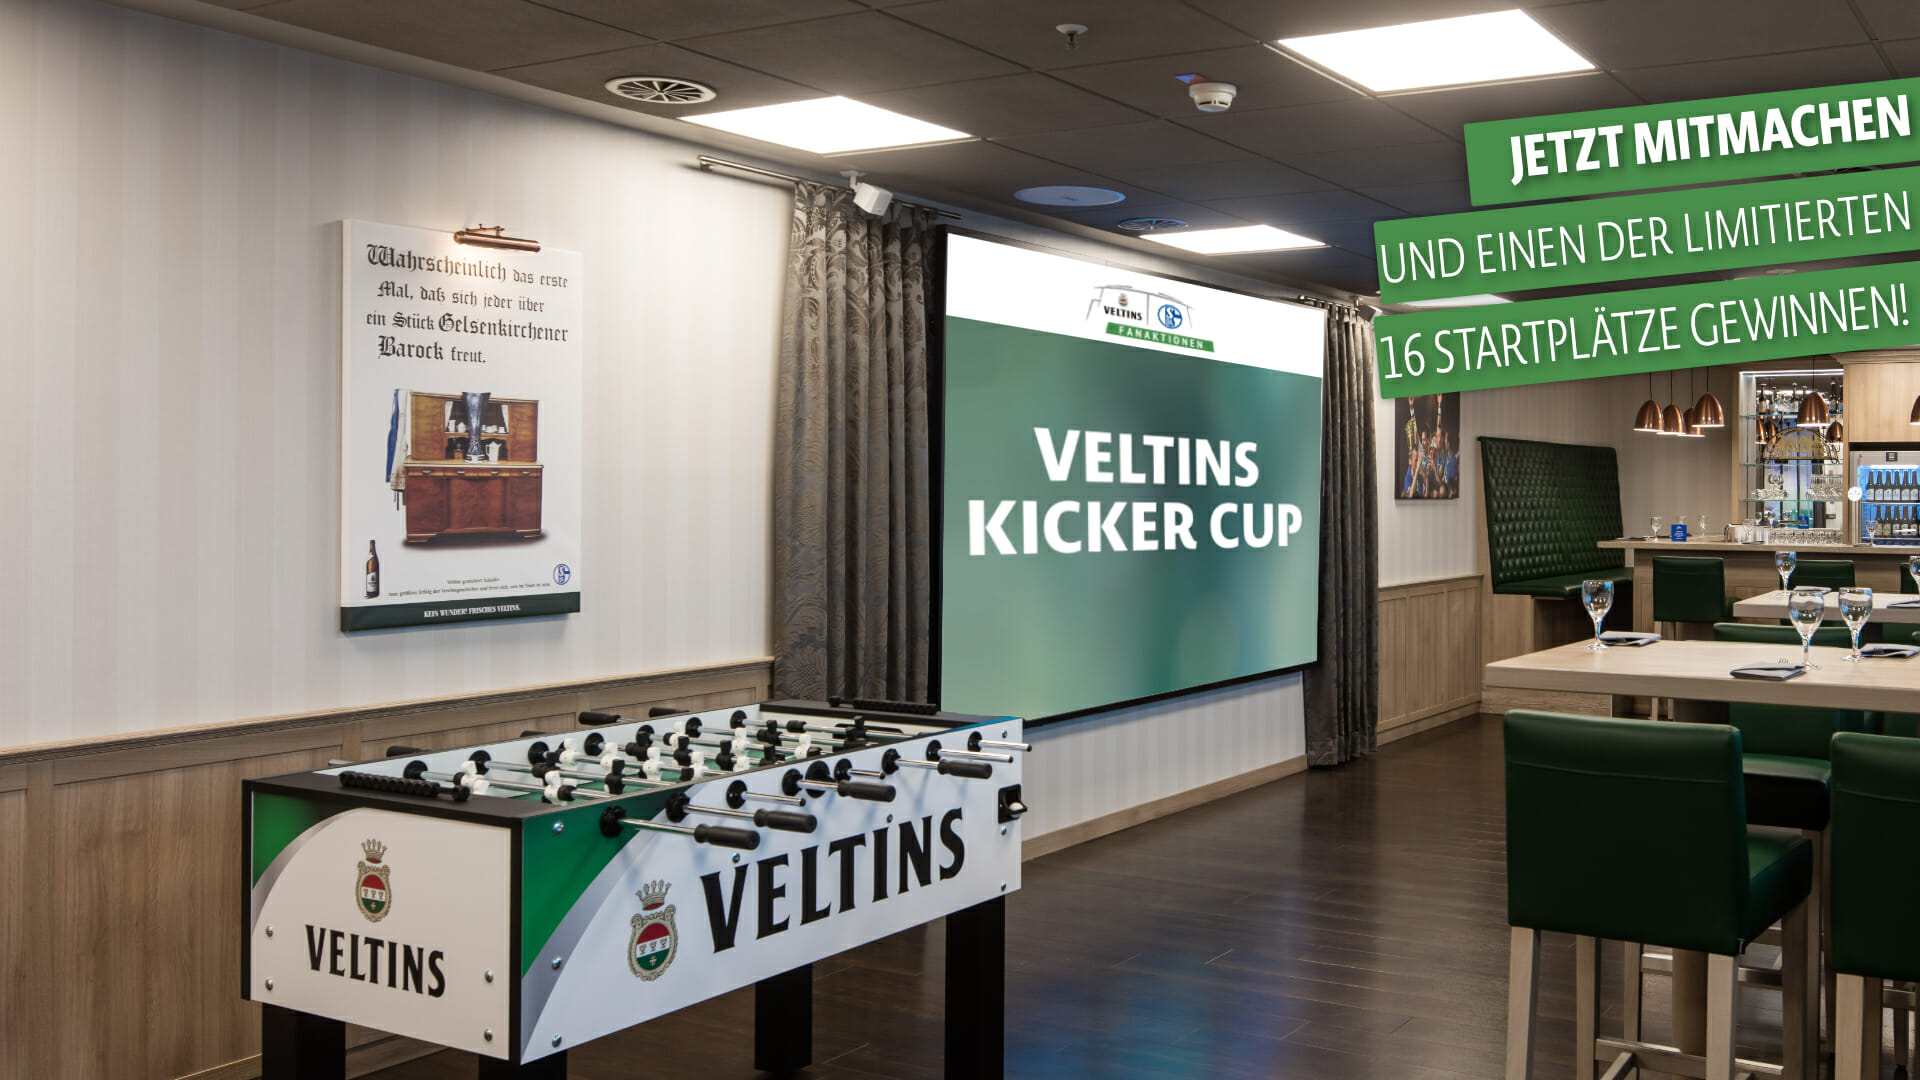 VELTINS Kicker Cup